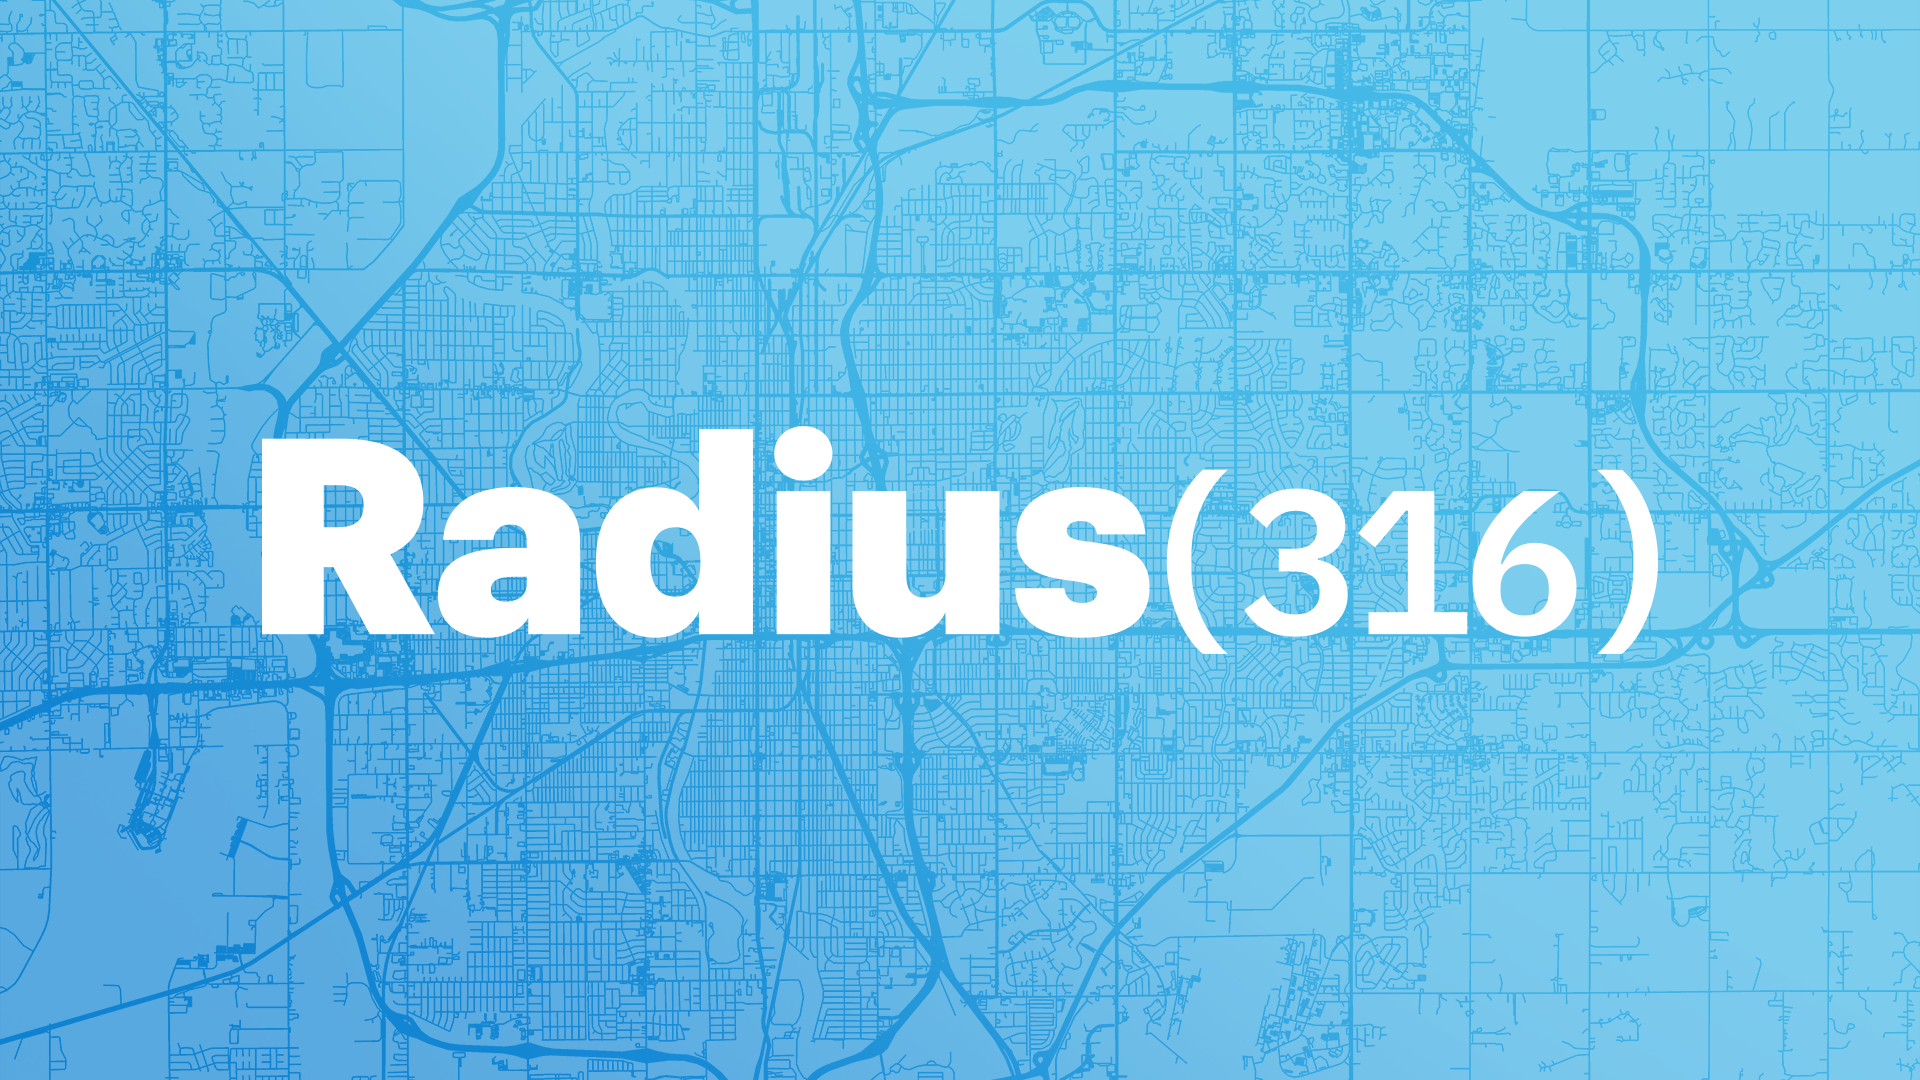 Radius(316) graphic